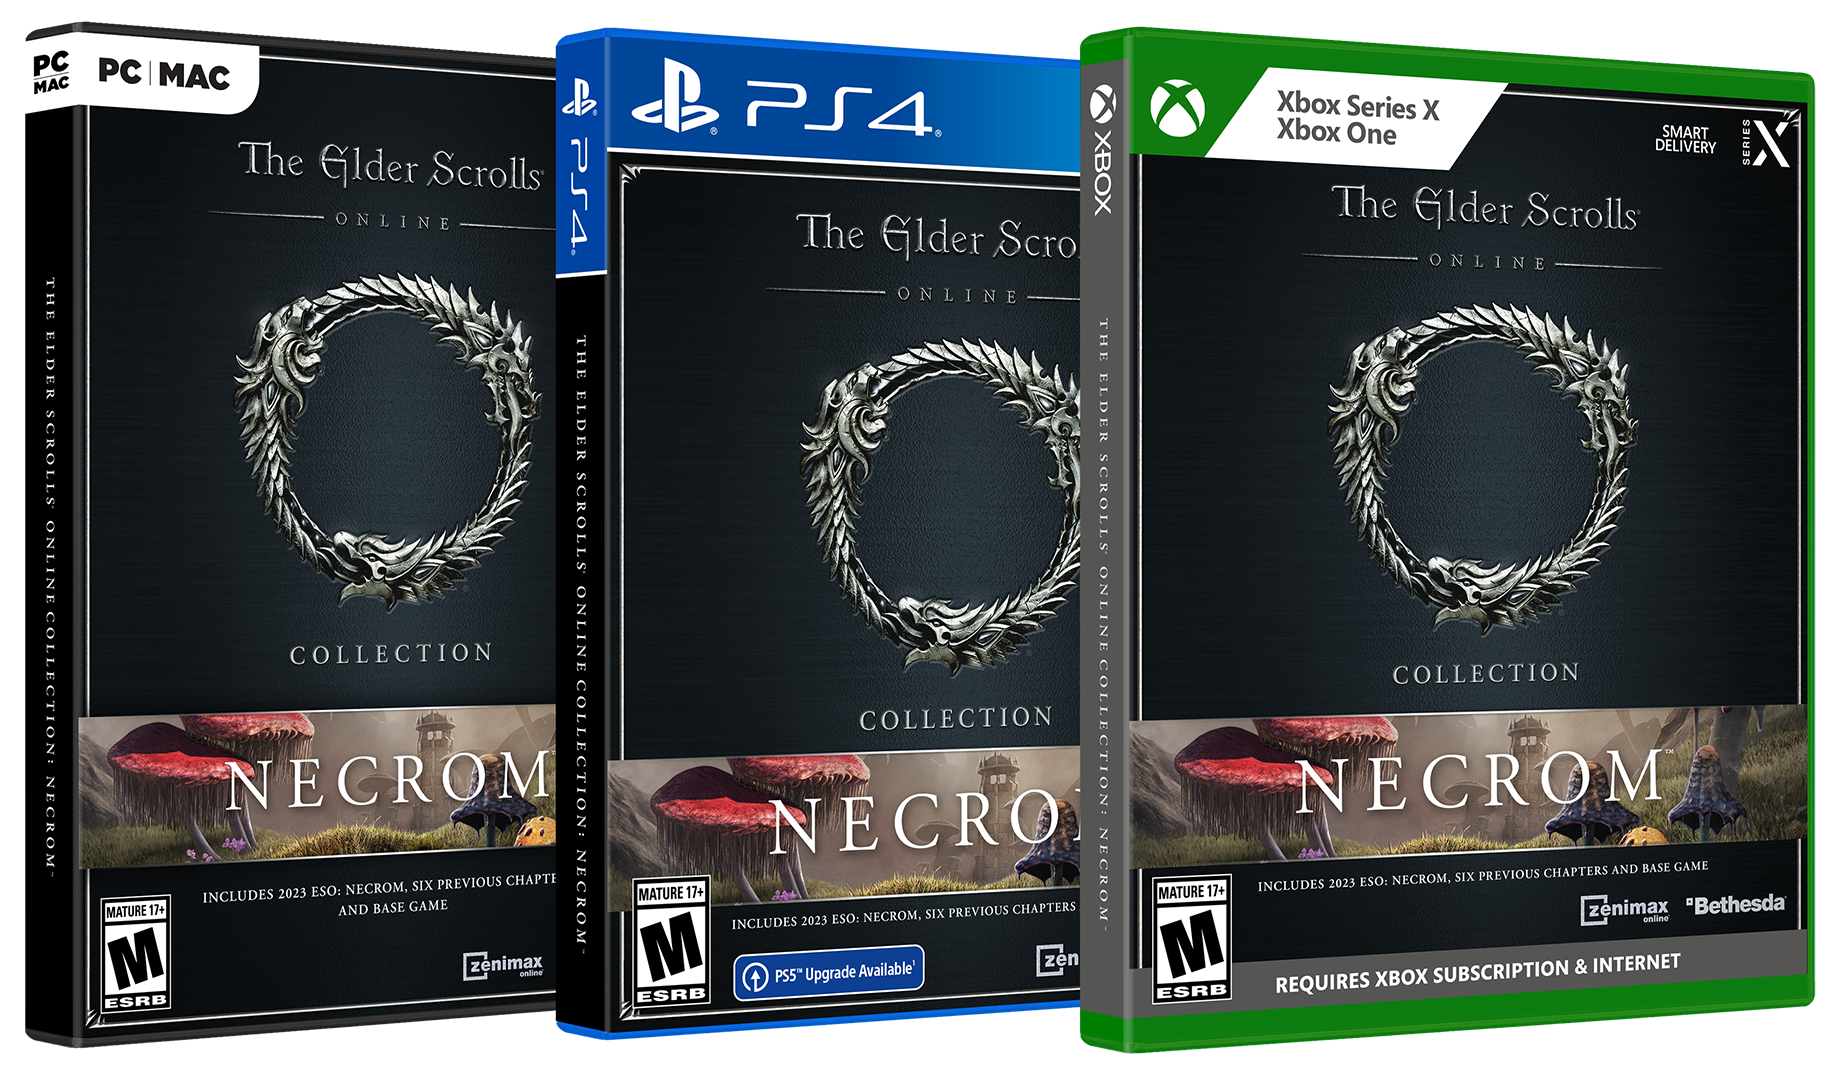 Buy Now - The Elder Scrolls Online